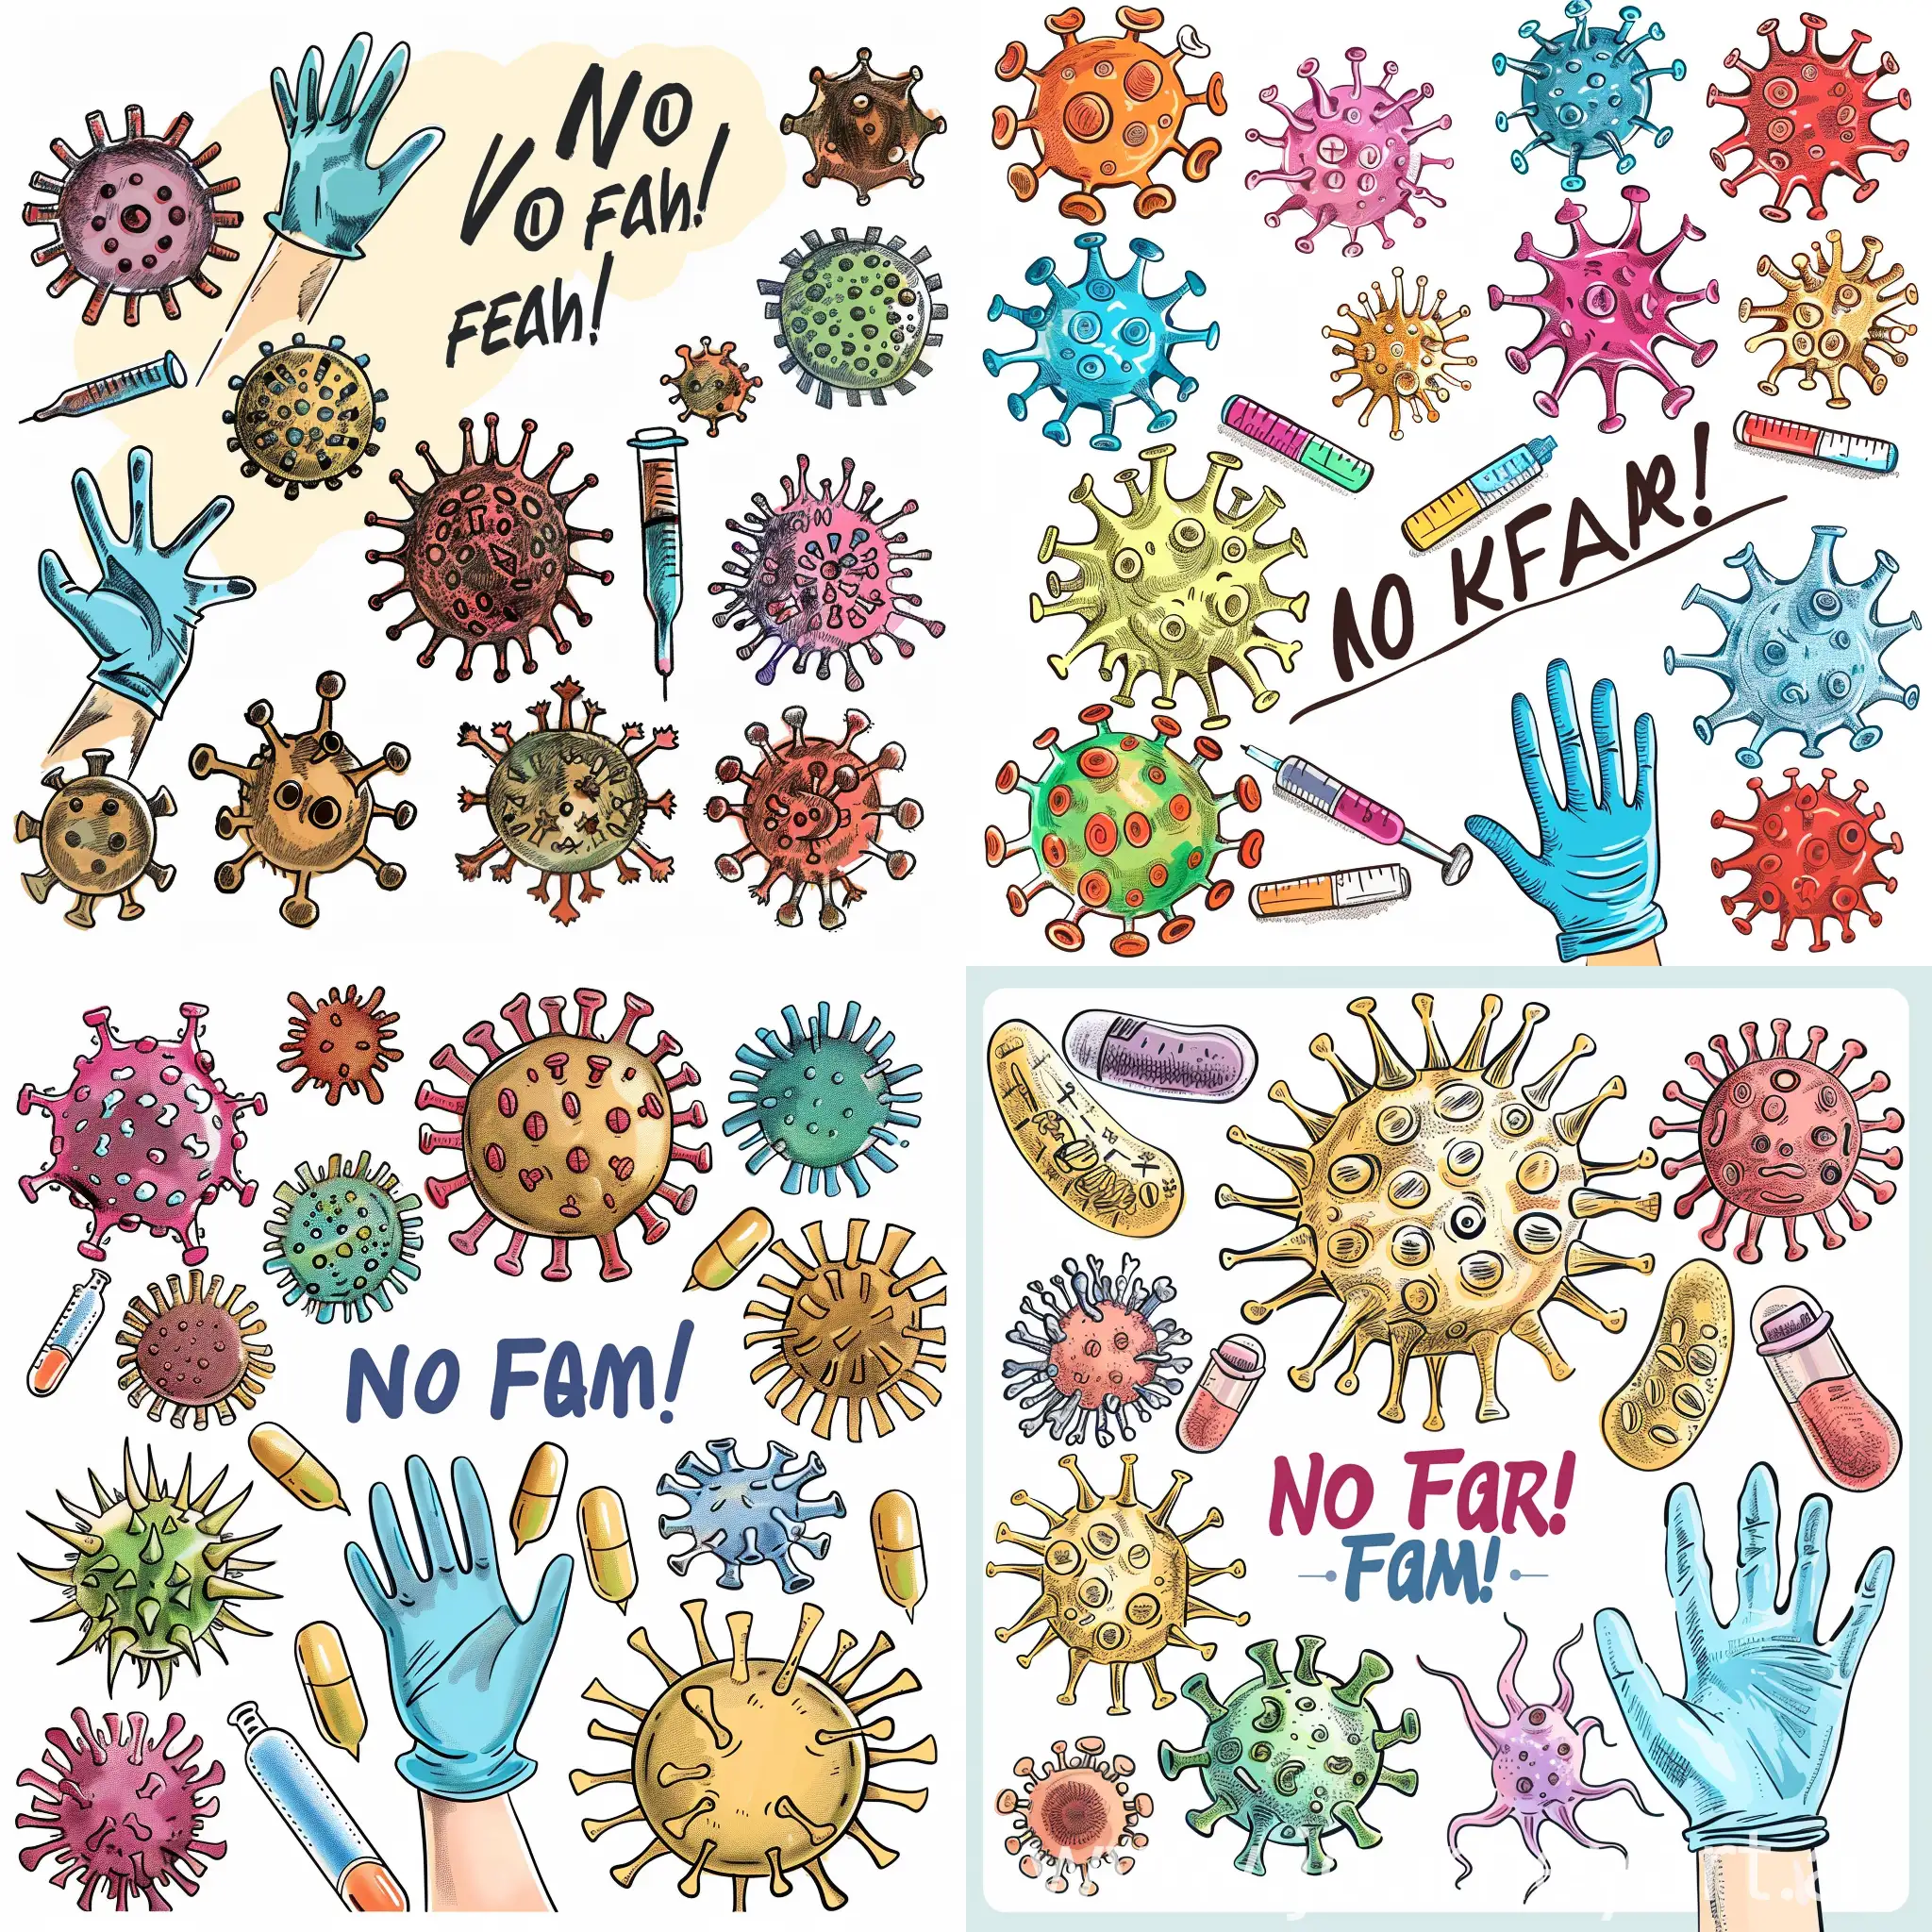 Нарисуй различные вирусы, женскую руку в лабораторных перчатках, На картинке напиши: "Страха нет!".  Используй приятные тона